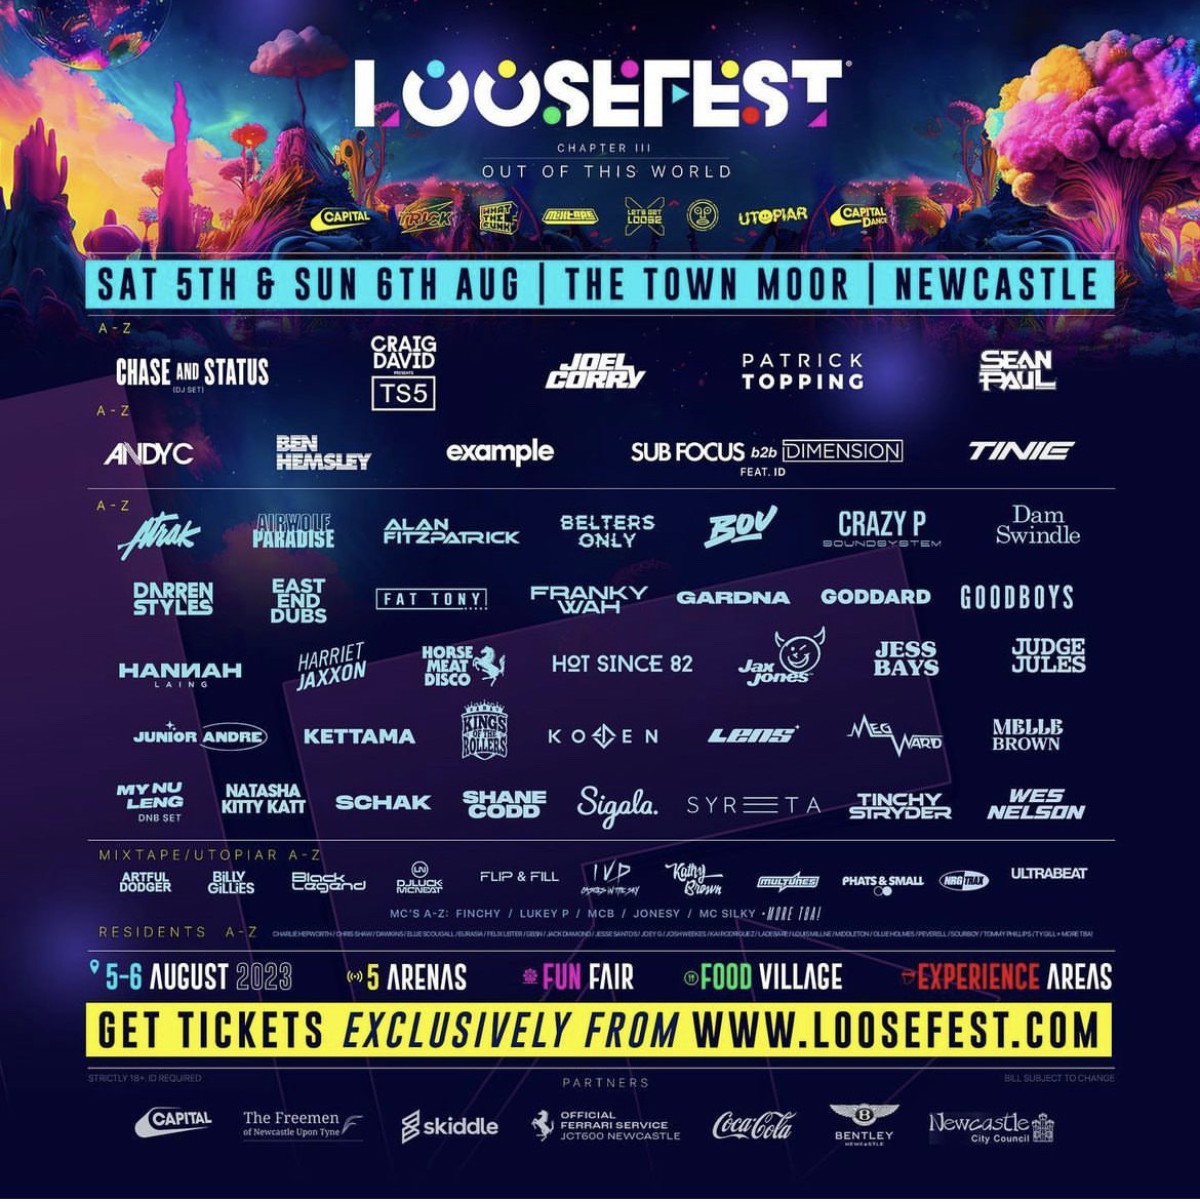 Loosefest' 23 Line Up